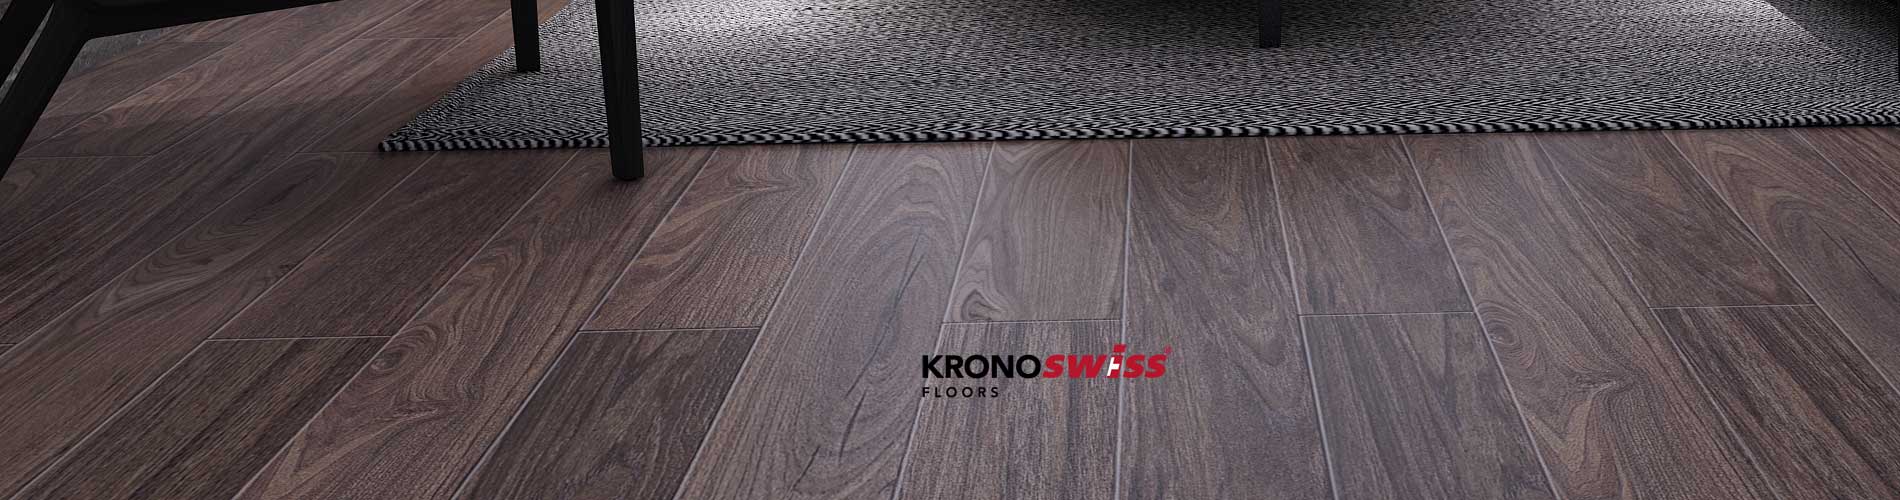 Kronoswiss All State Fooring Distributors, Kronoswiss Laminate Flooring Distributors